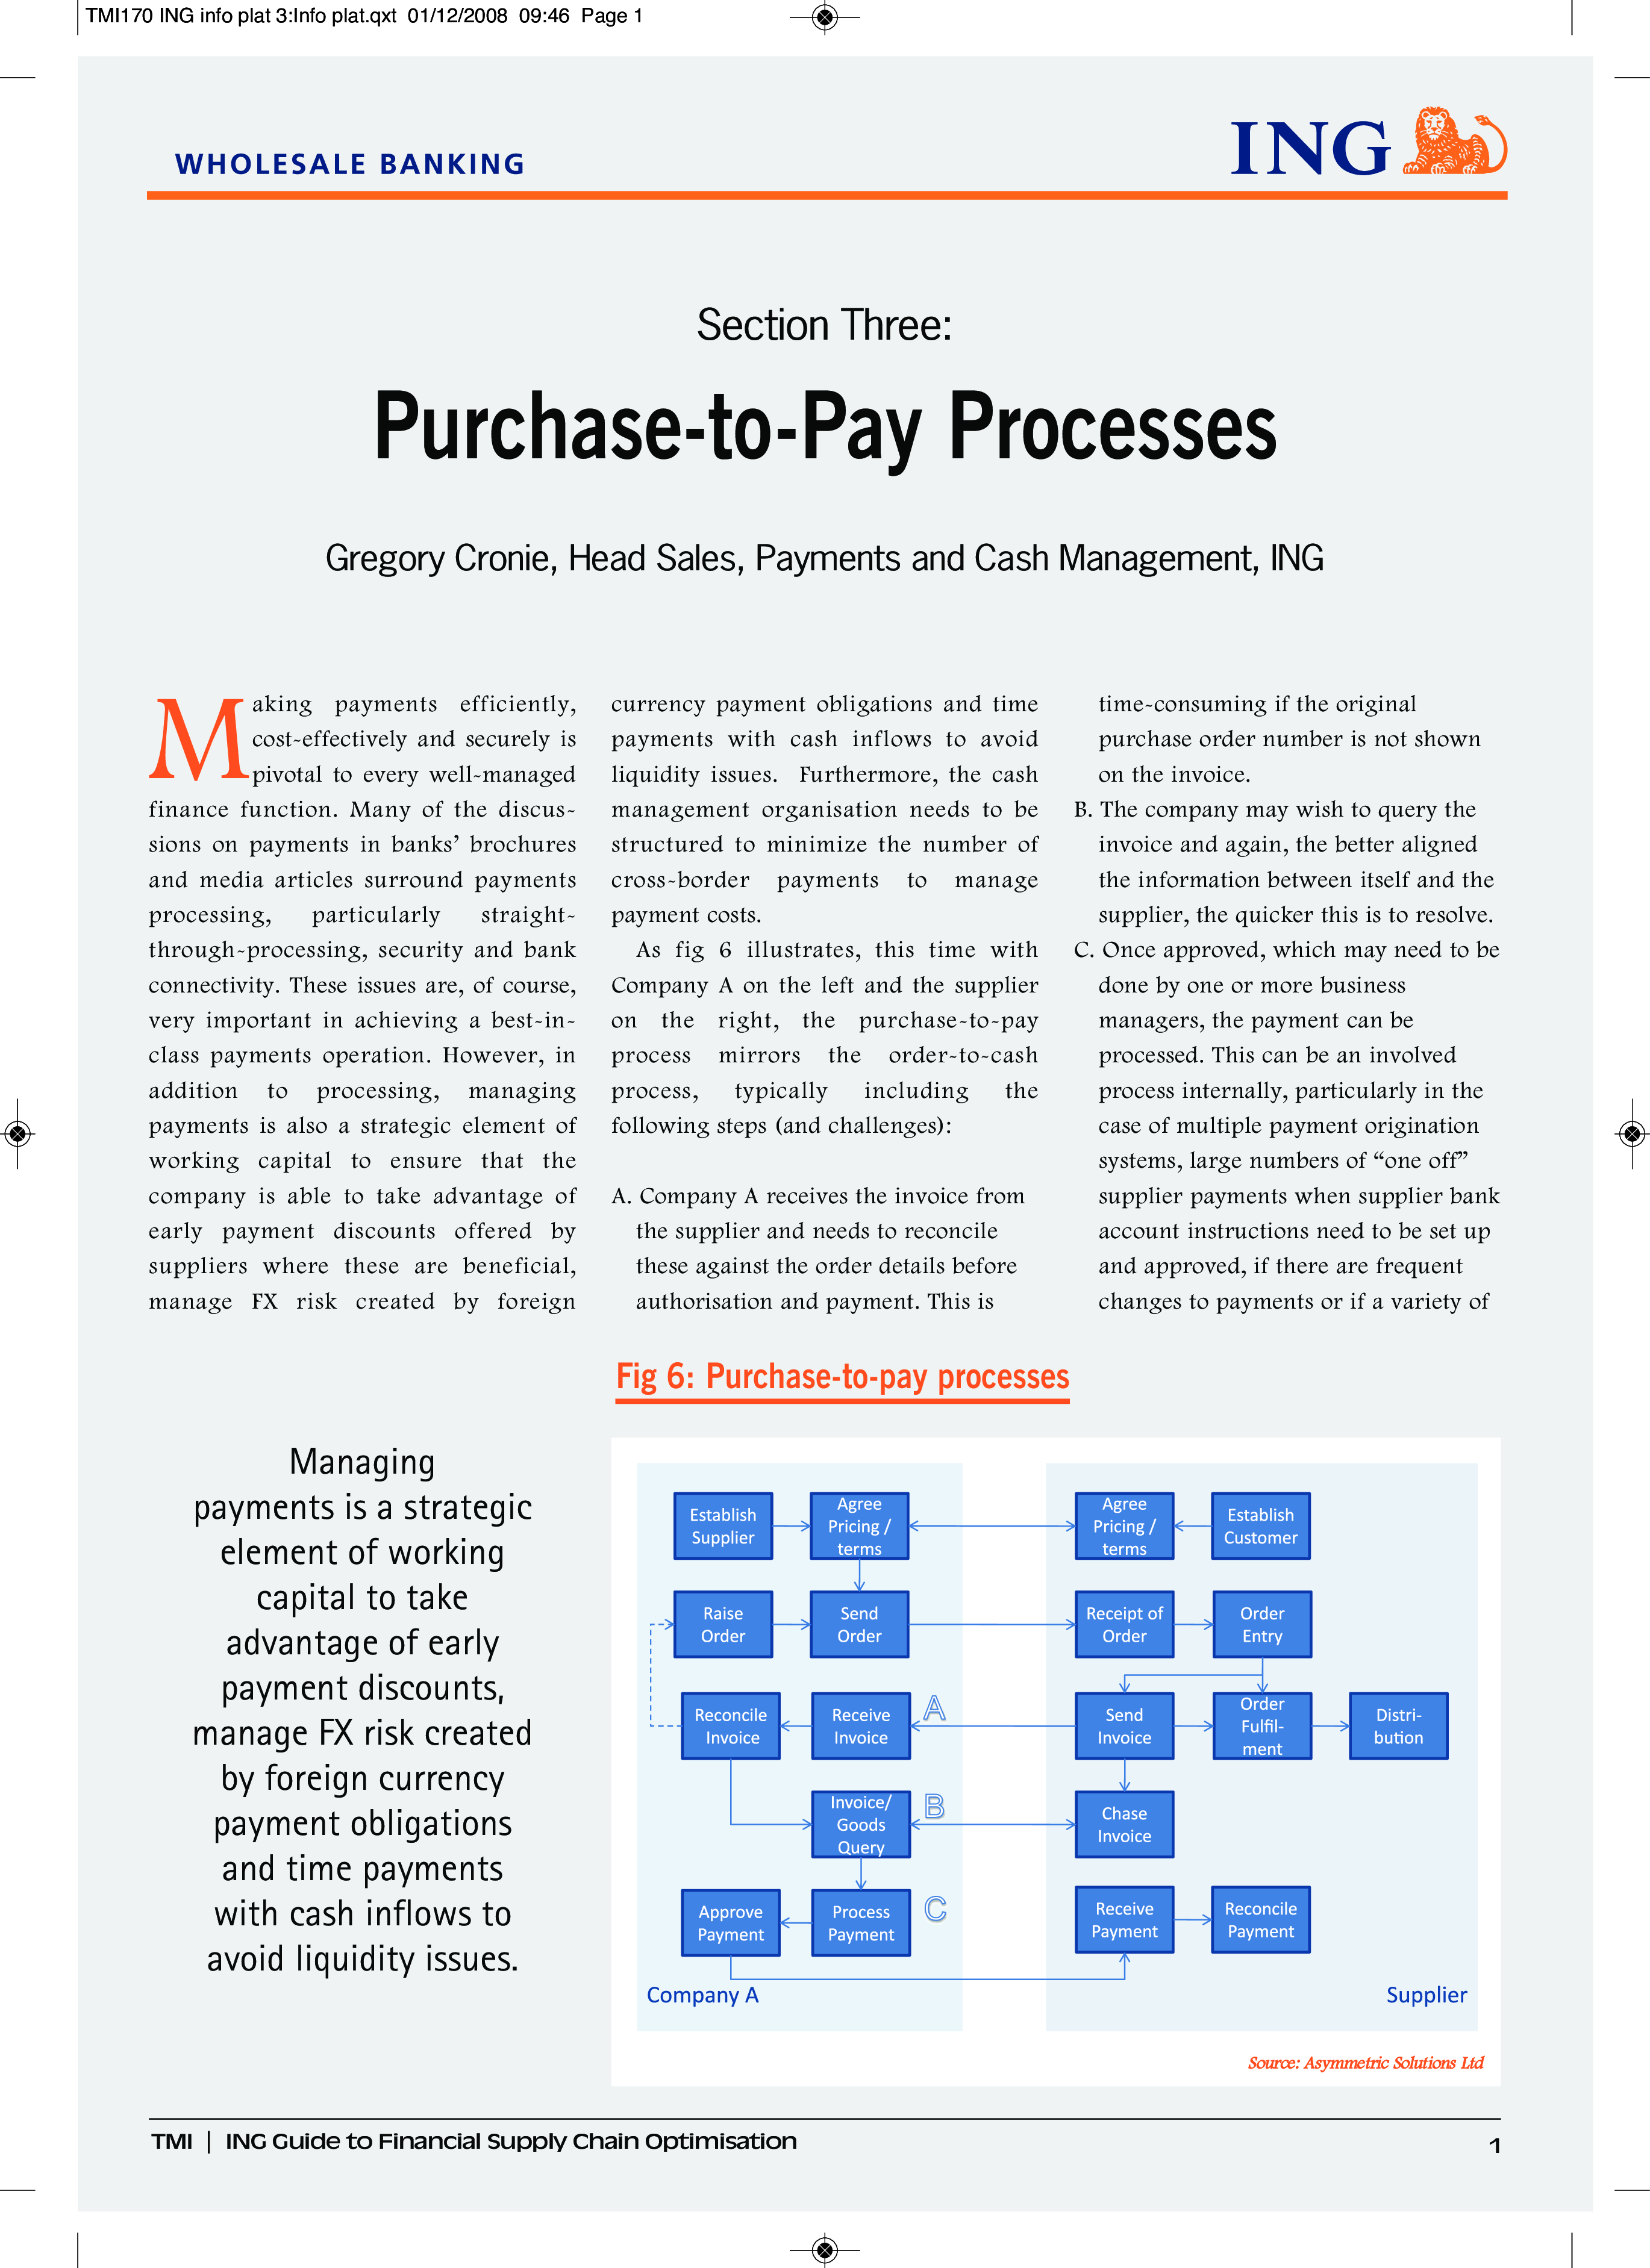 Cash Payment Process Flow Chart main image